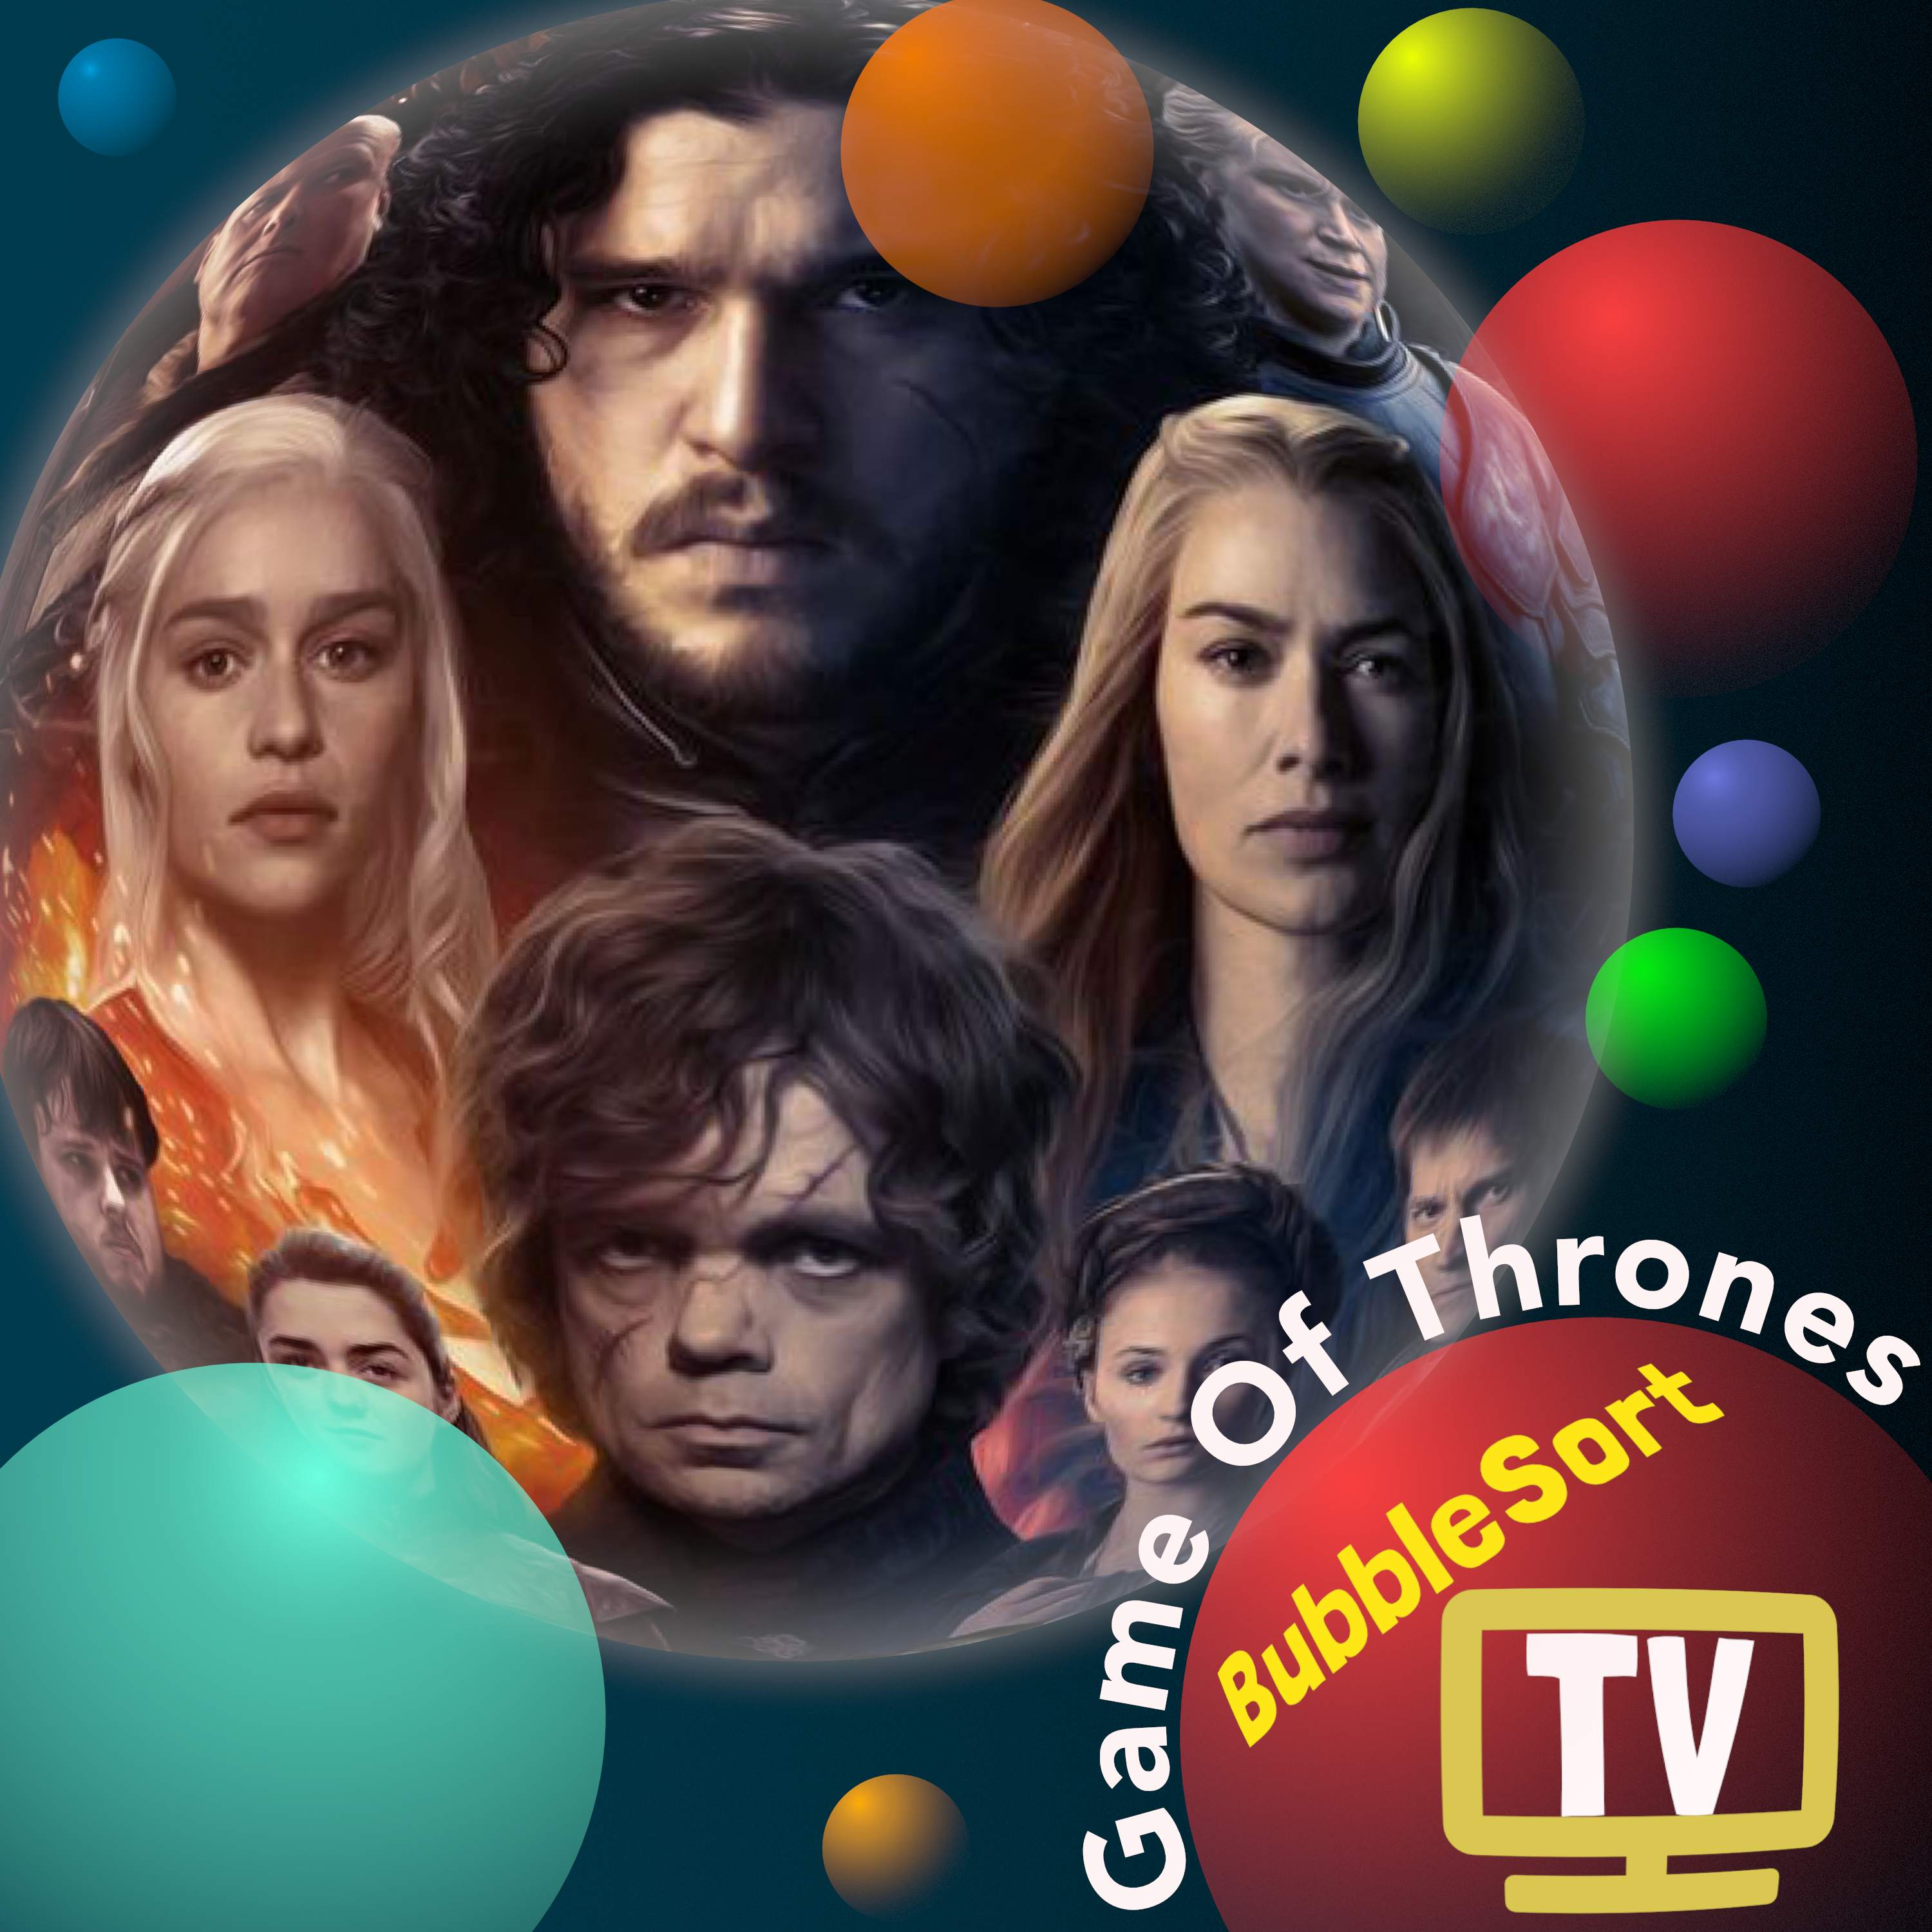 BubbleSort TV: Game Of Thrones